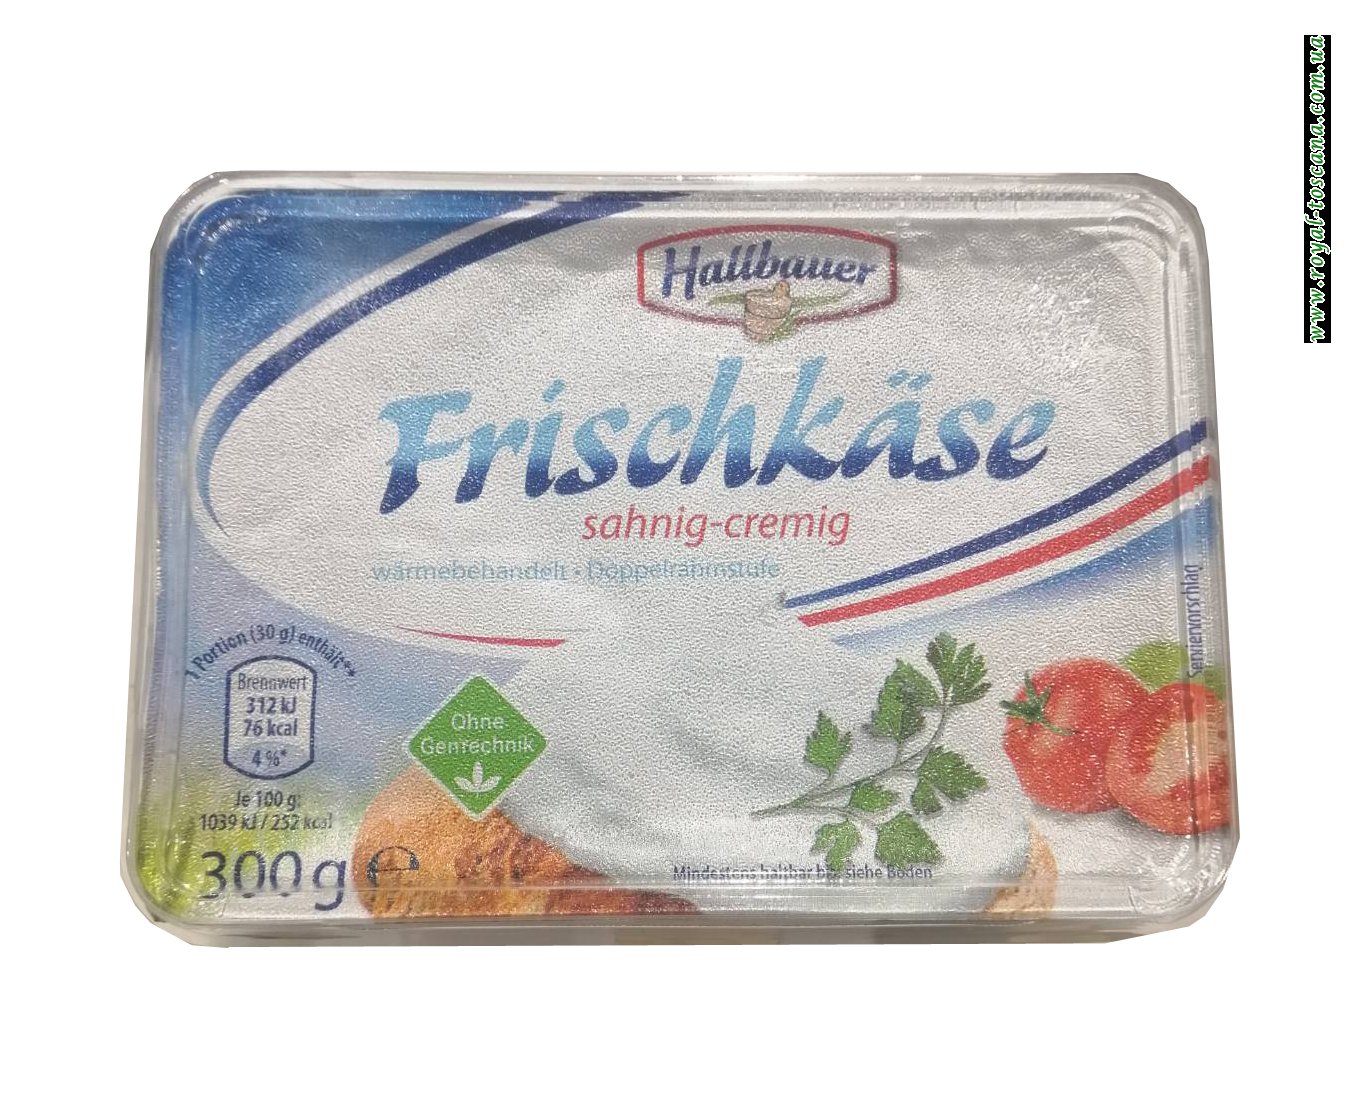 Сливочный кремовый сыр Hallbauer Frischkäse sahnig-cremig, 300г